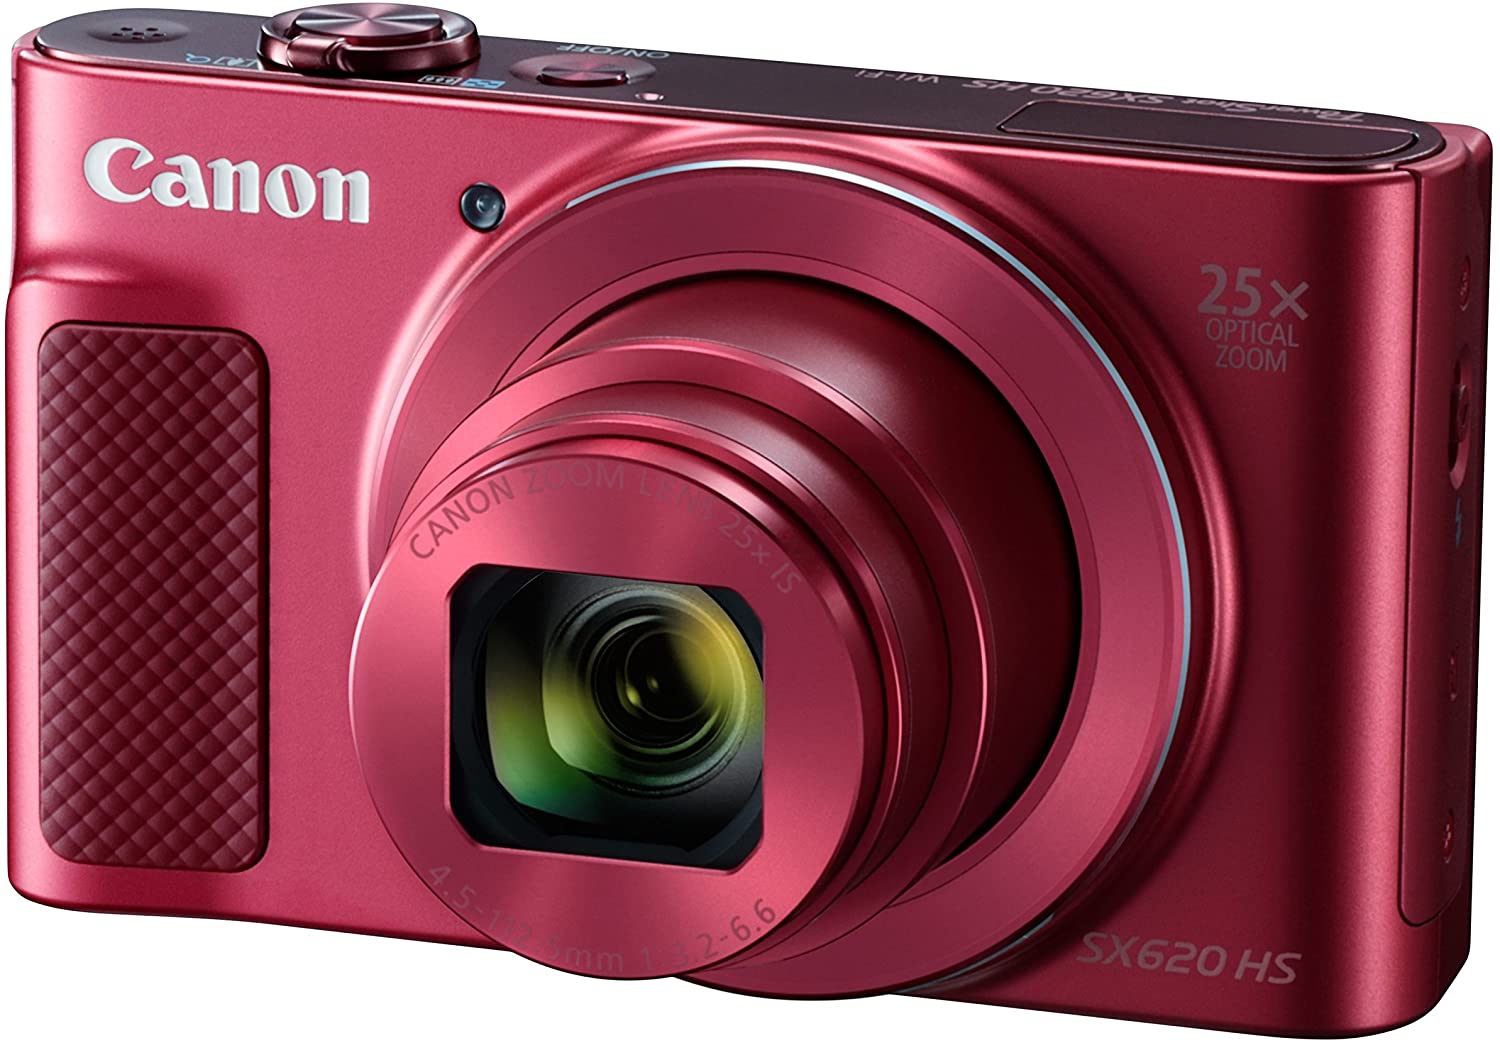 ダークブラウン 茶色 Canon コンパクトデジタルカメラ PowerShot SX620